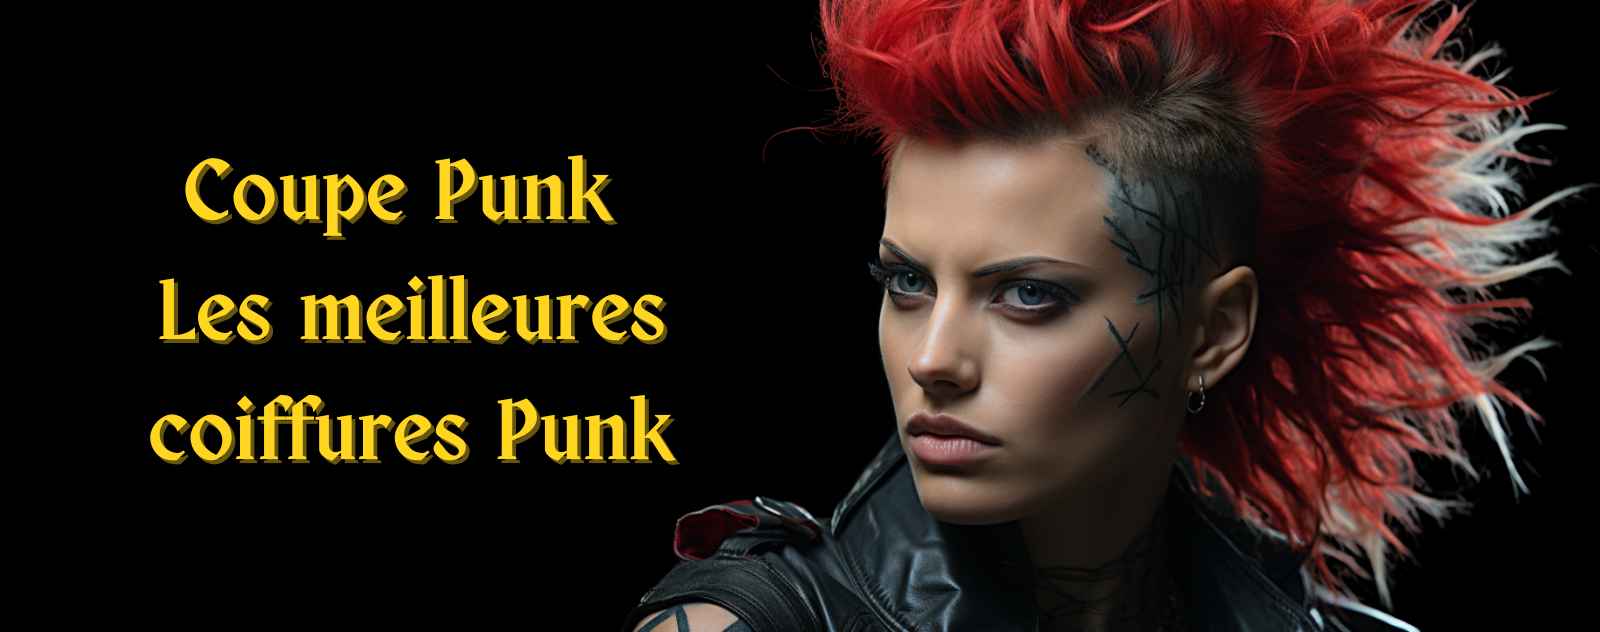 Coupe Punk Coiffures Punk